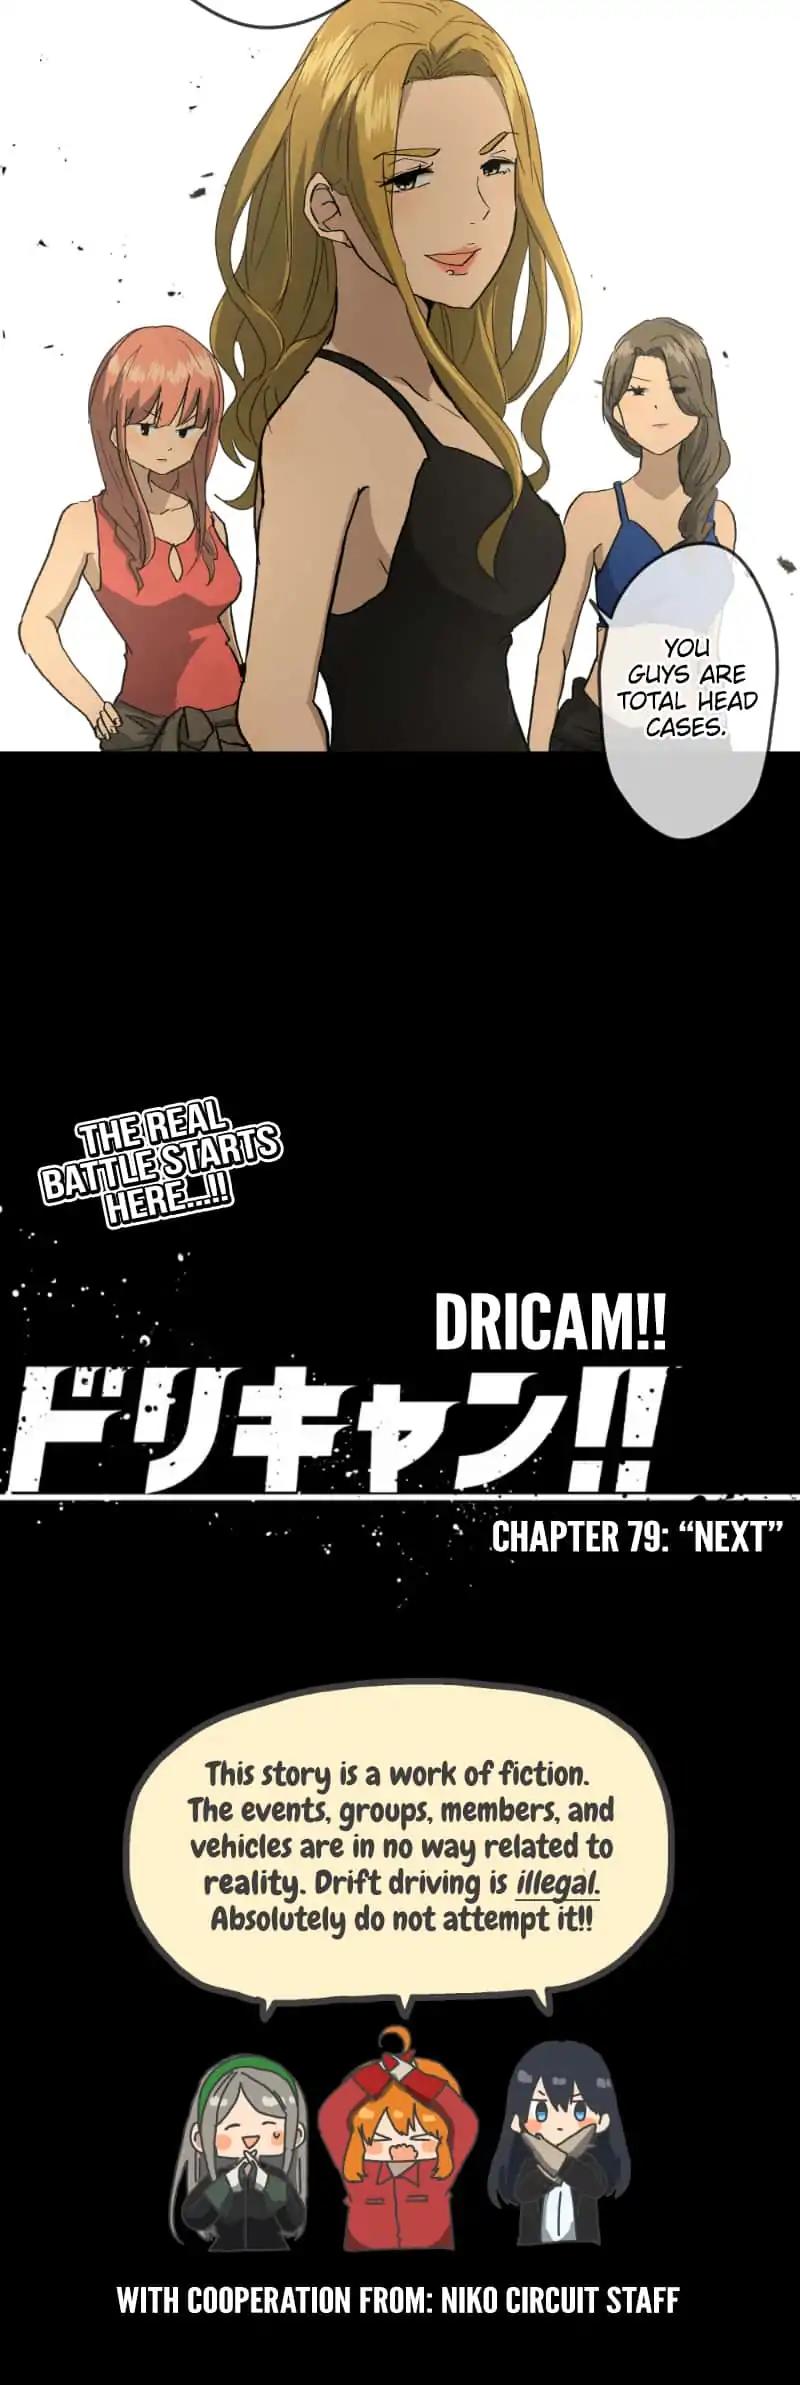 Dricam!! Chapter 79: